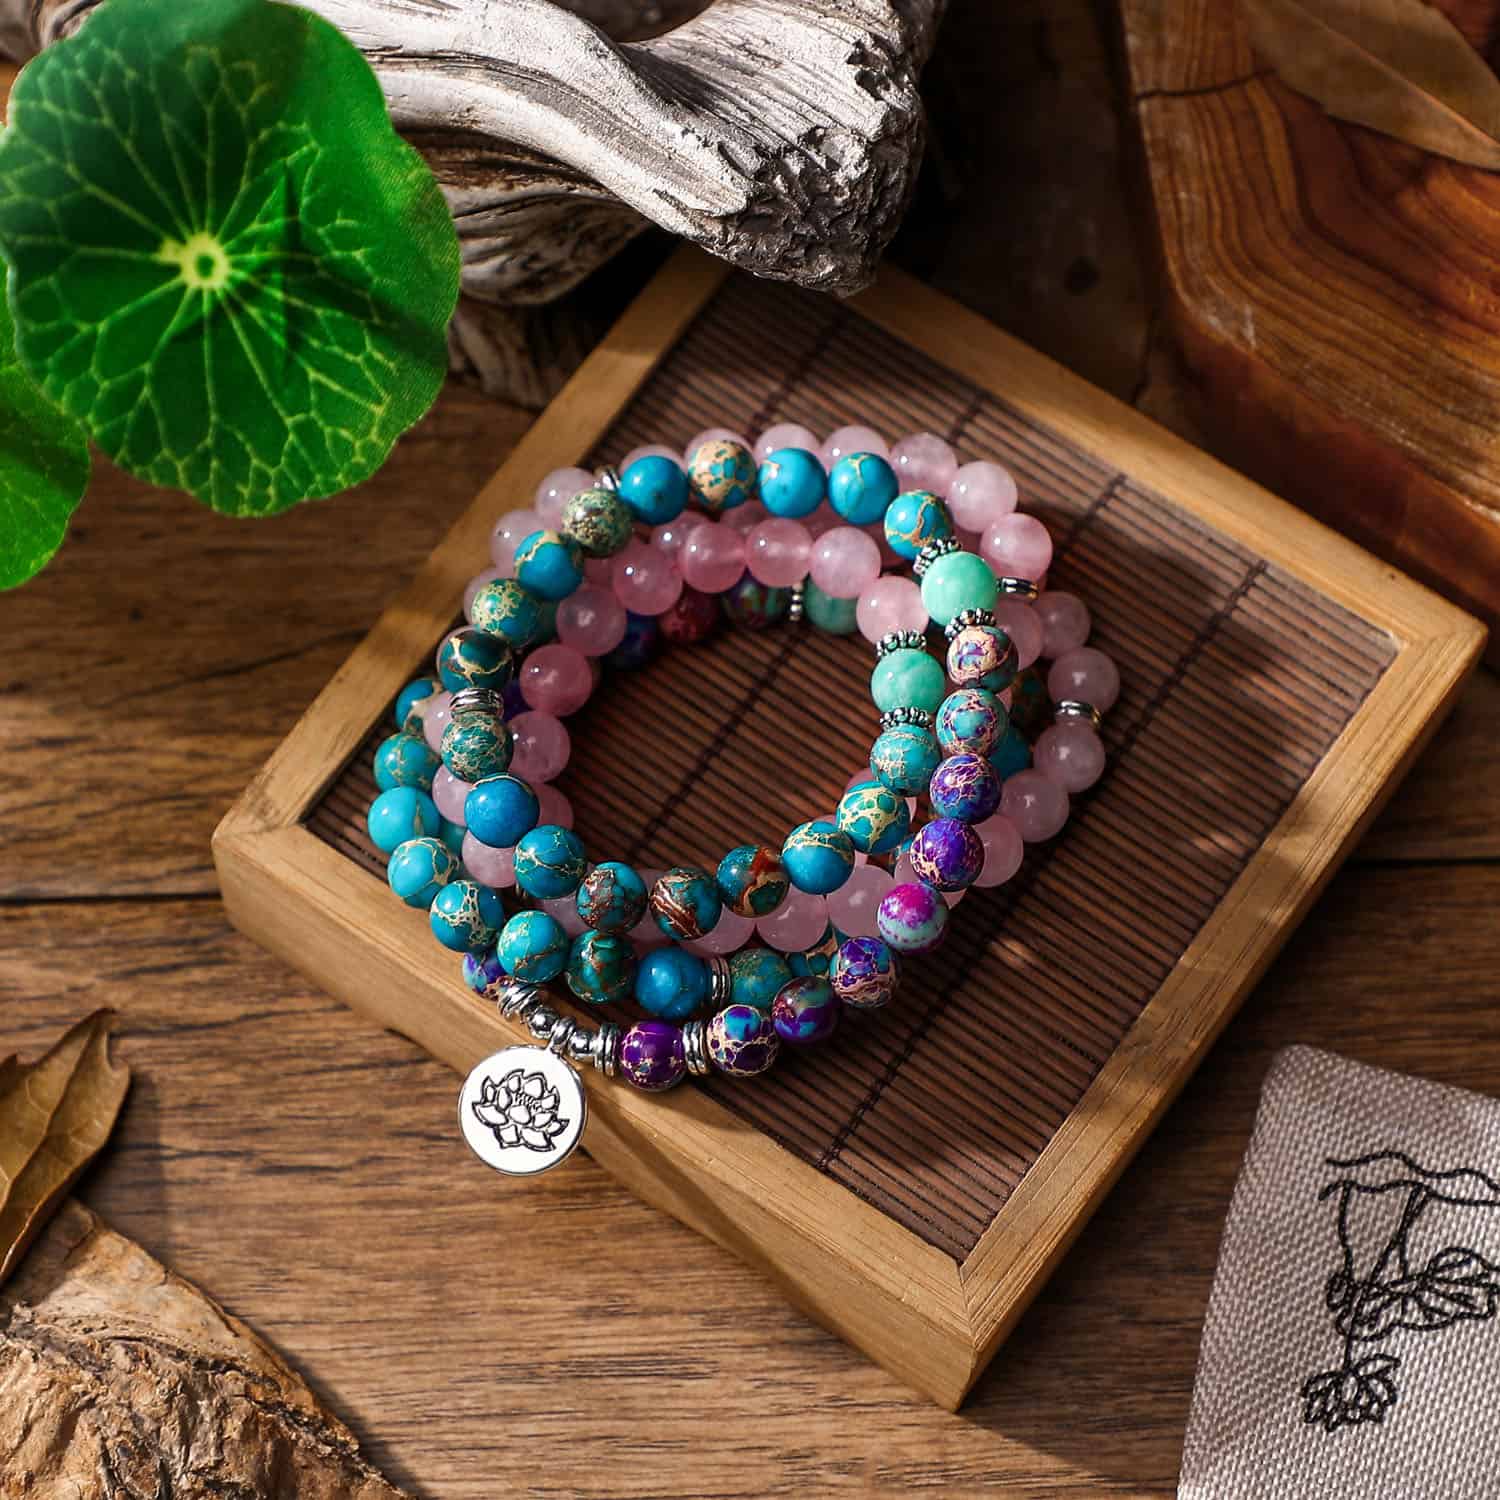 Japamala necklace and bracelet – Pink Jasper and Turquoise, Indigo with Tree of Life